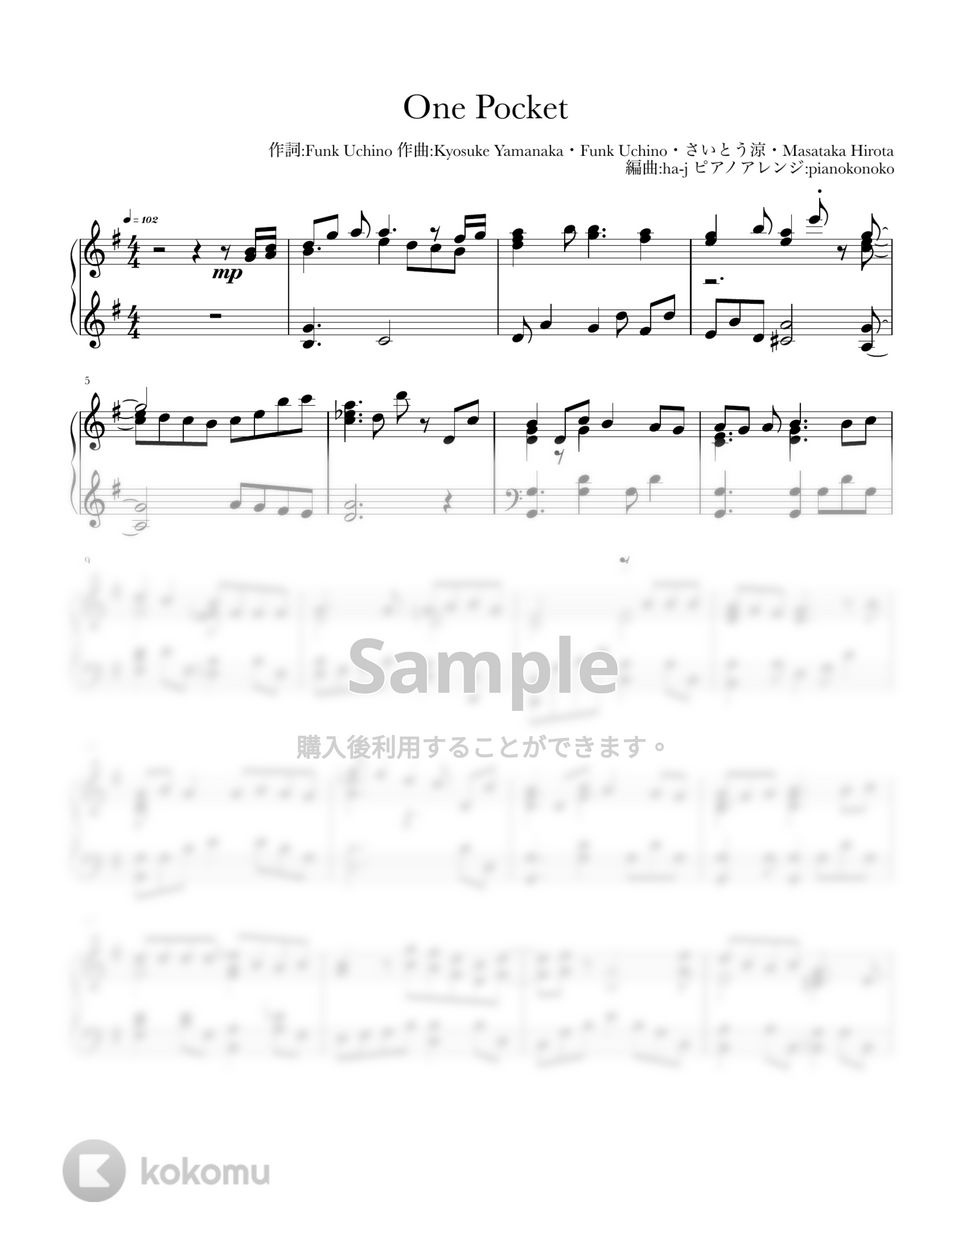 なにわ男子 - One Pocket (ピアノ/なにわ男子/OnePocket/ワンポケット/ハッピーサプライズ/カップリング/ジャニーズ) by pianokonoko